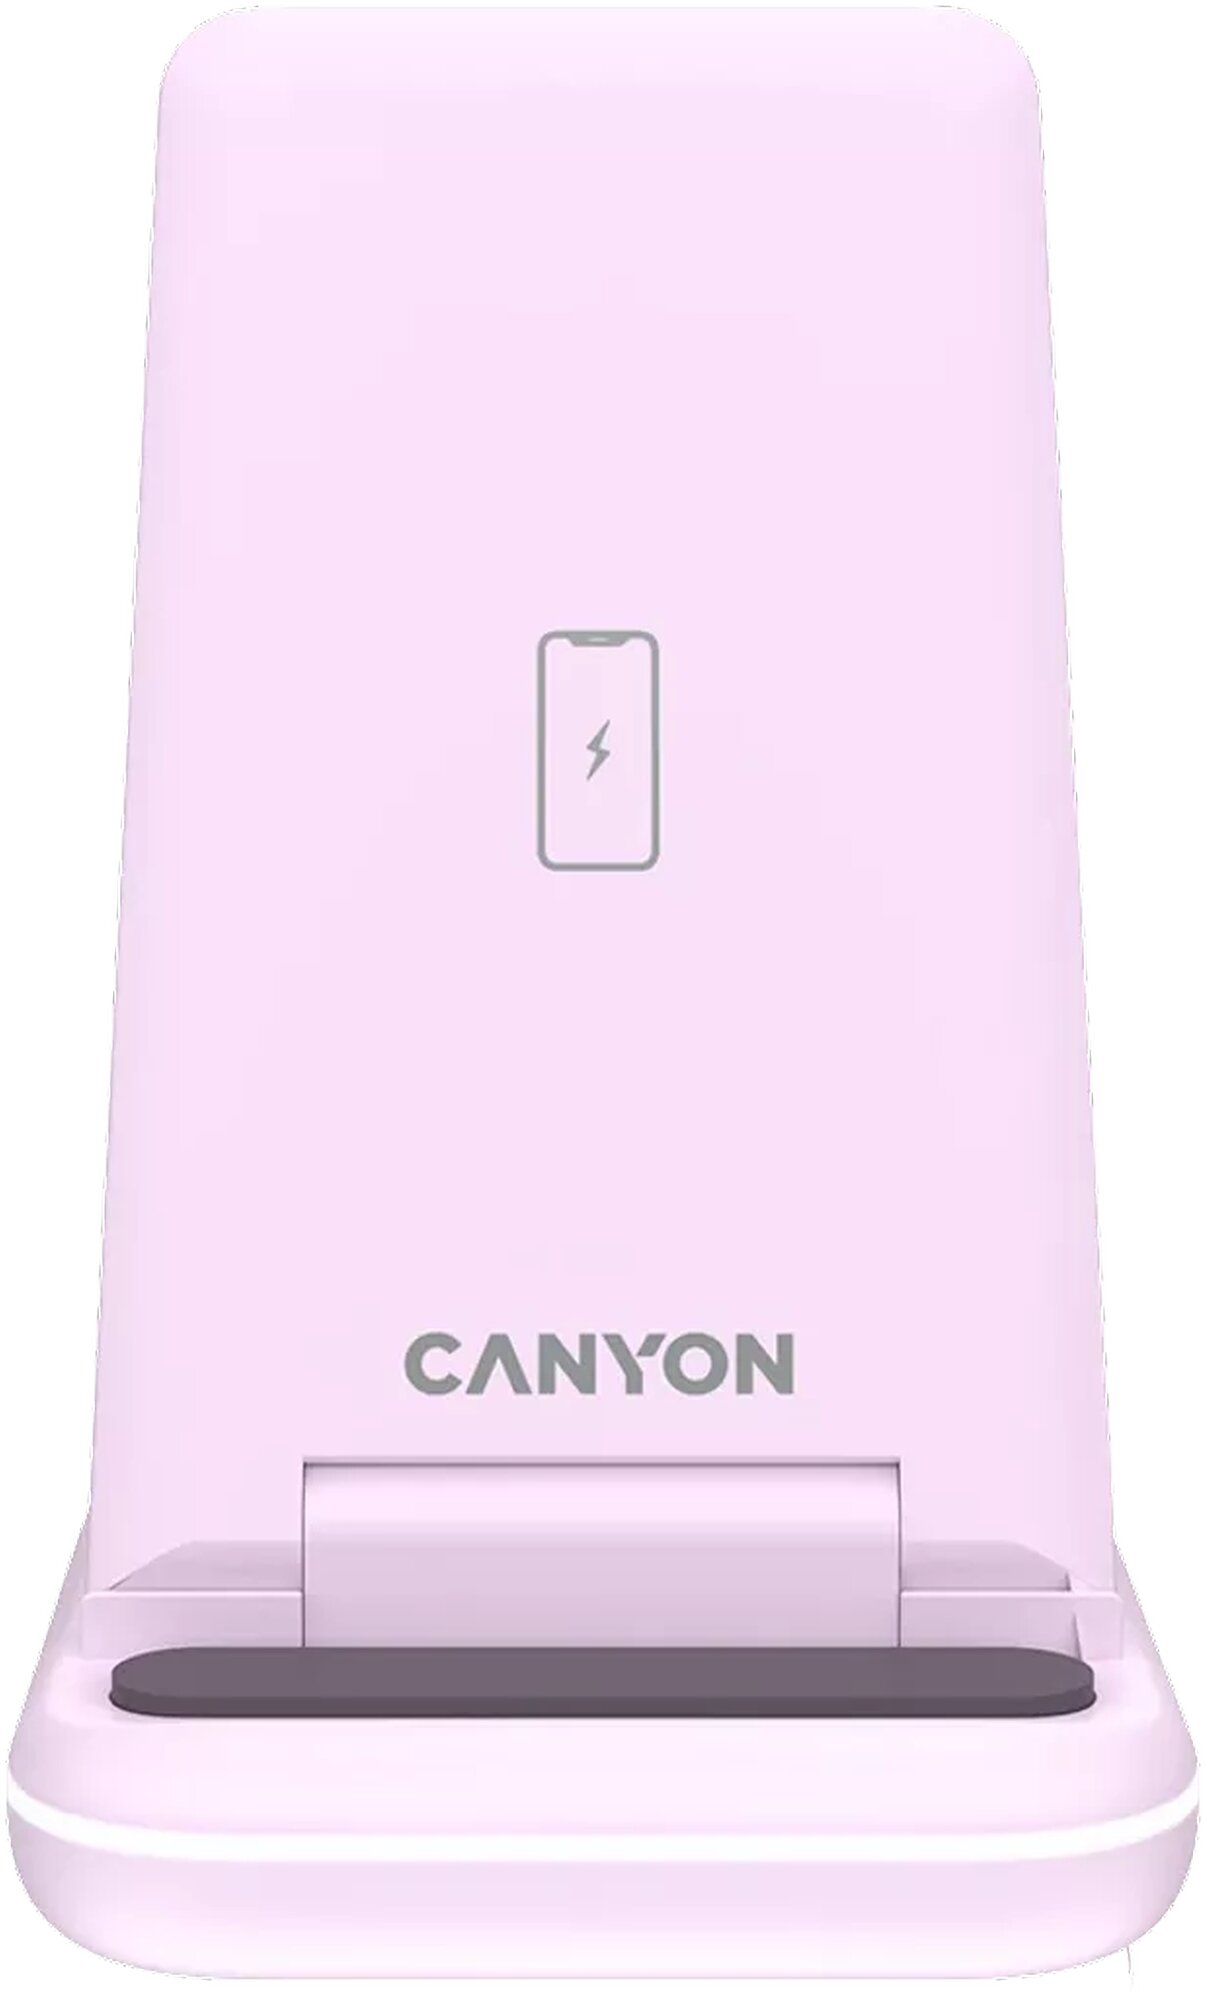 CANYON bezdrátová nabíječka 3v1, růžová - CNS-WCS304IP